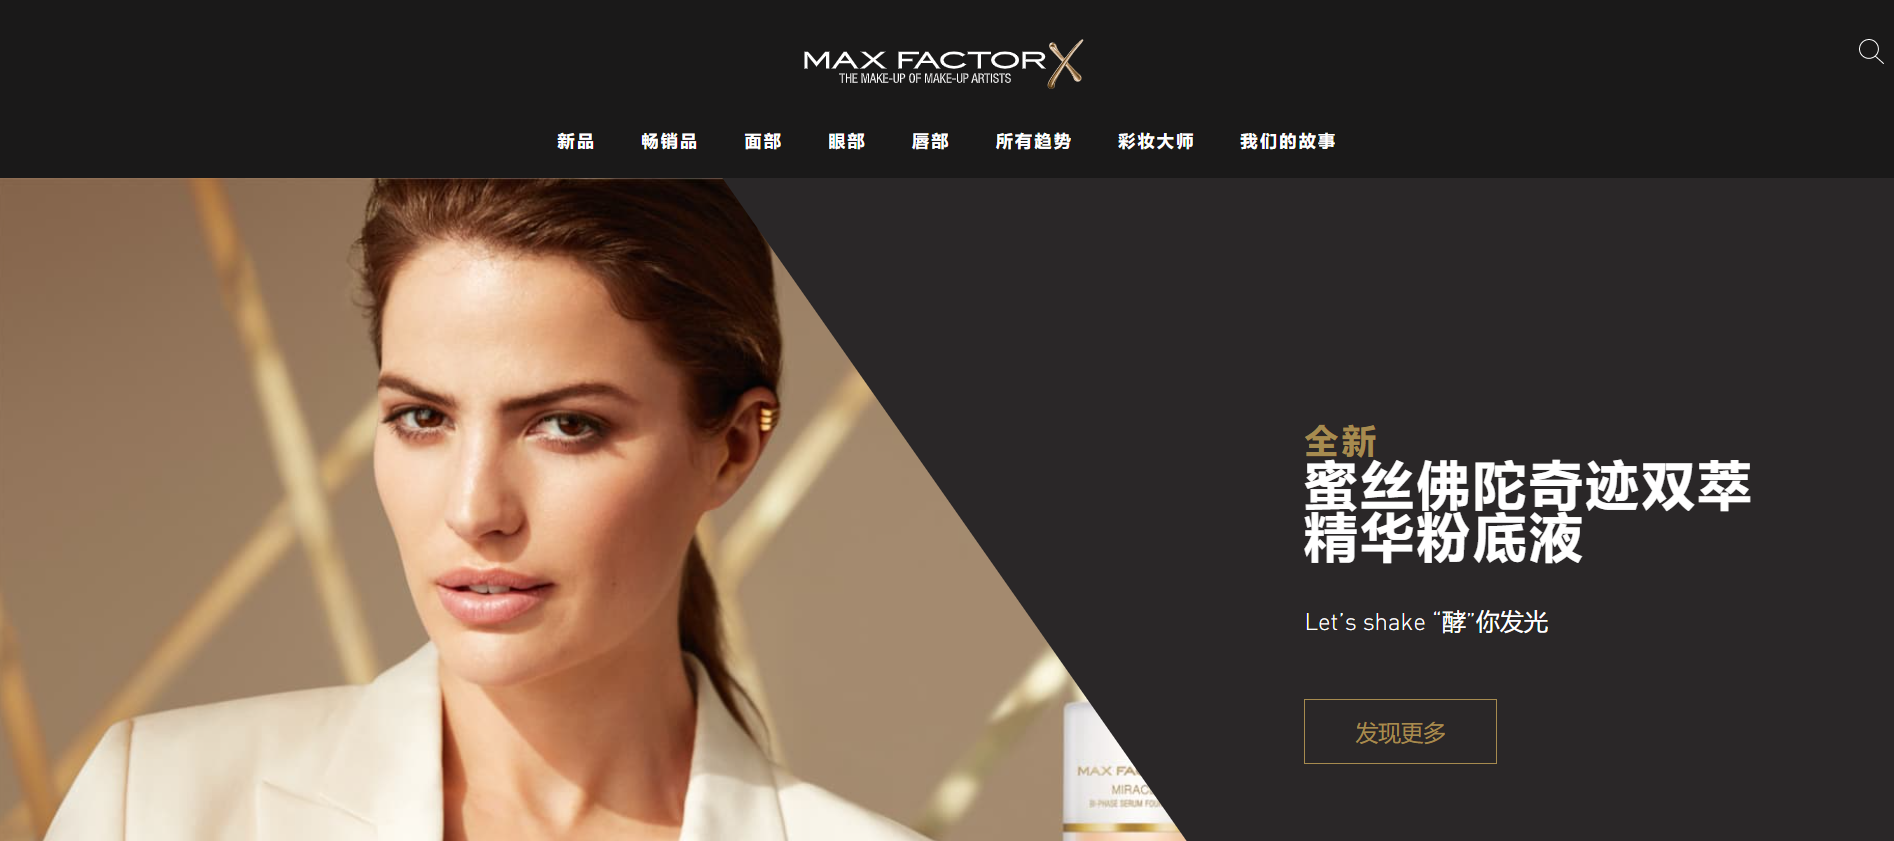 Max Factor（蜜丝佛陀）